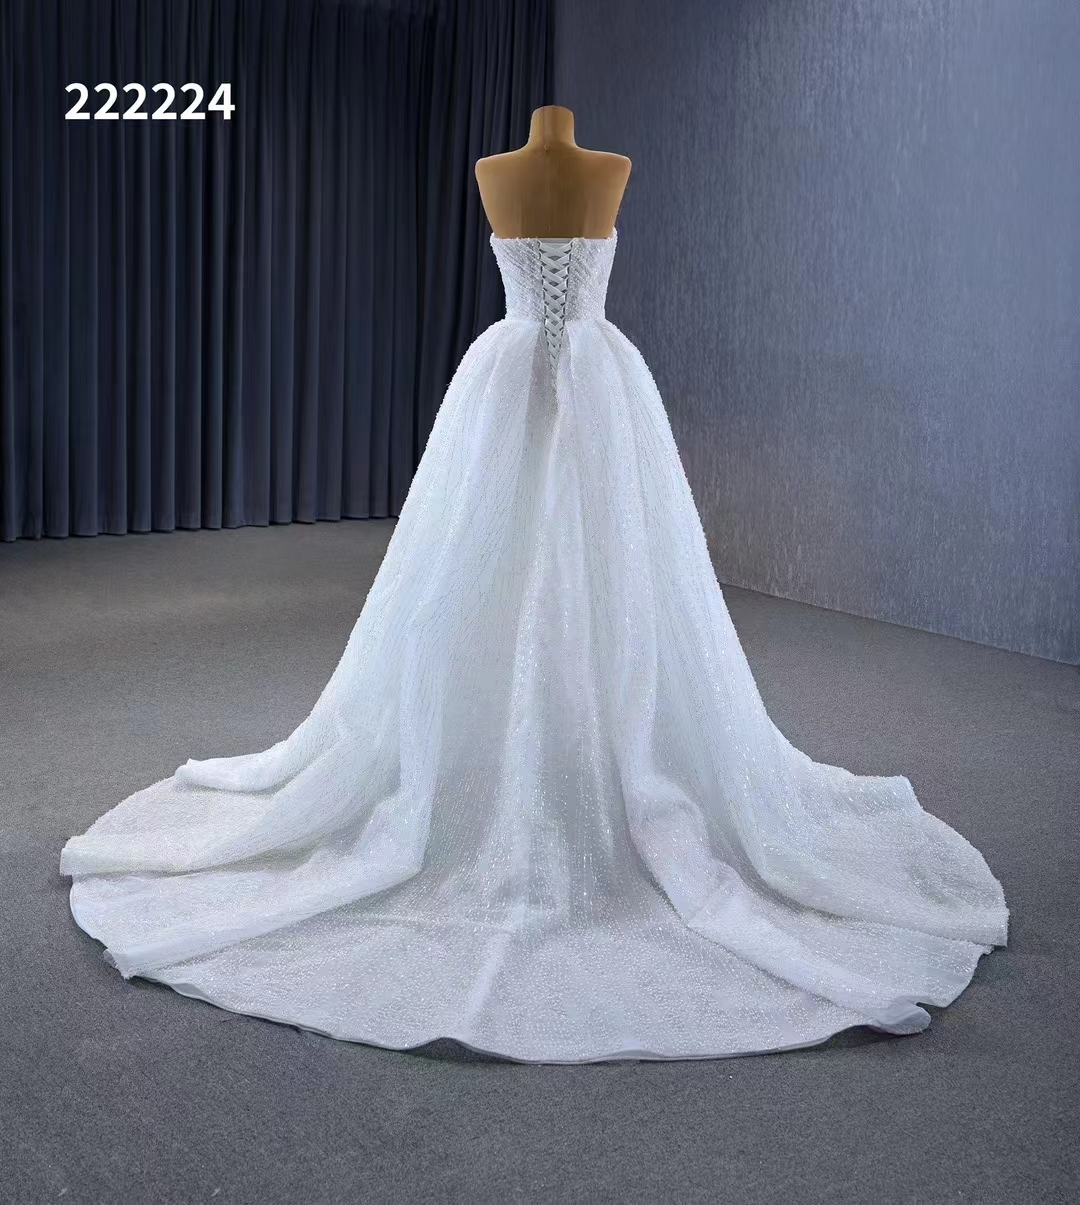 Robe de mariée chérie paillettes dos nu robes sans manches pour les femmes SM222224